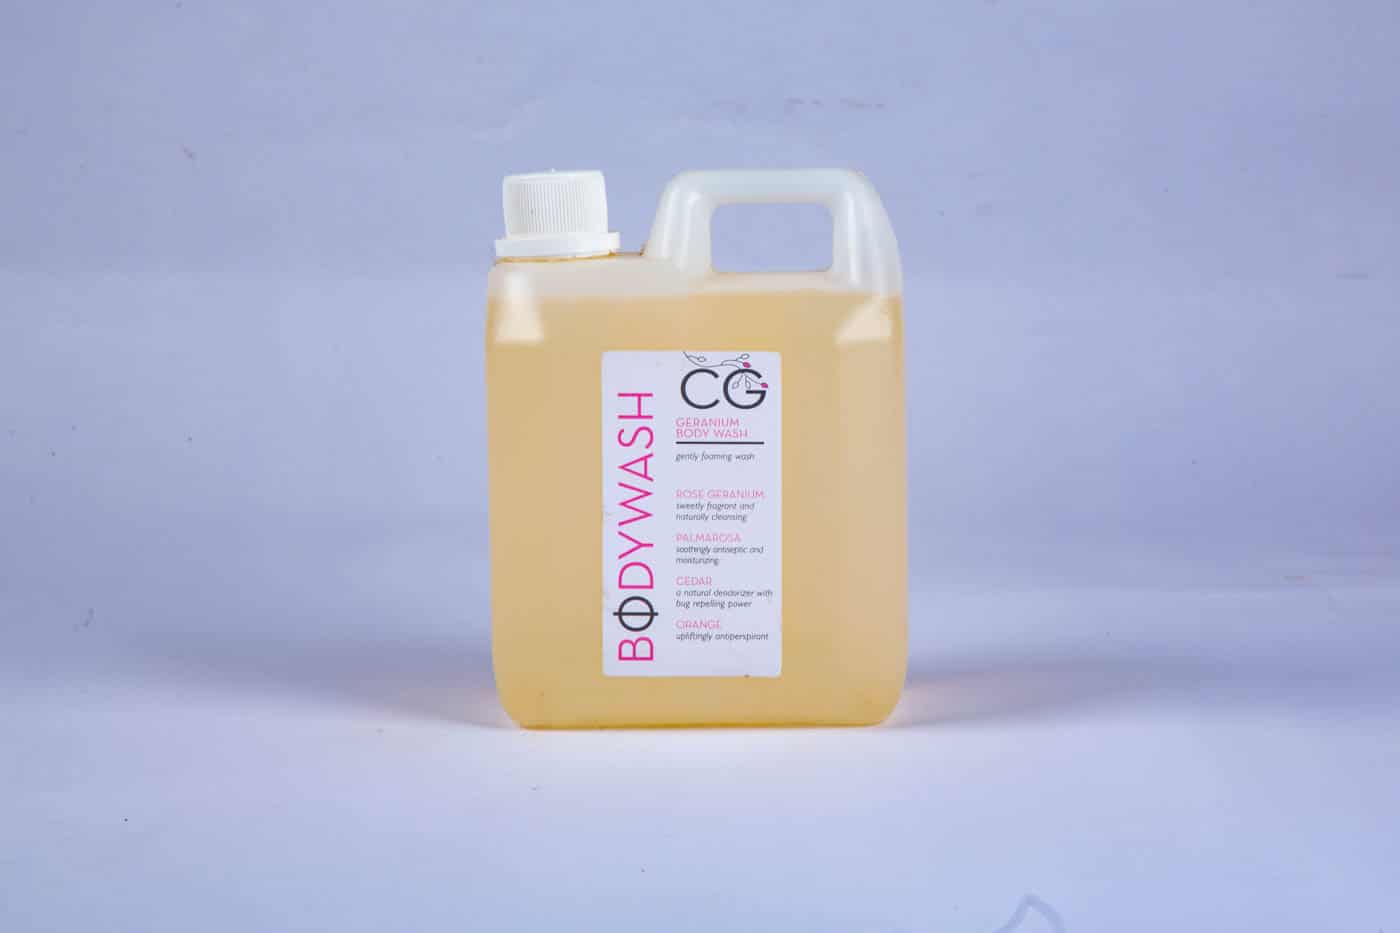 CinnabarGreenGeraniumBodyWash litre